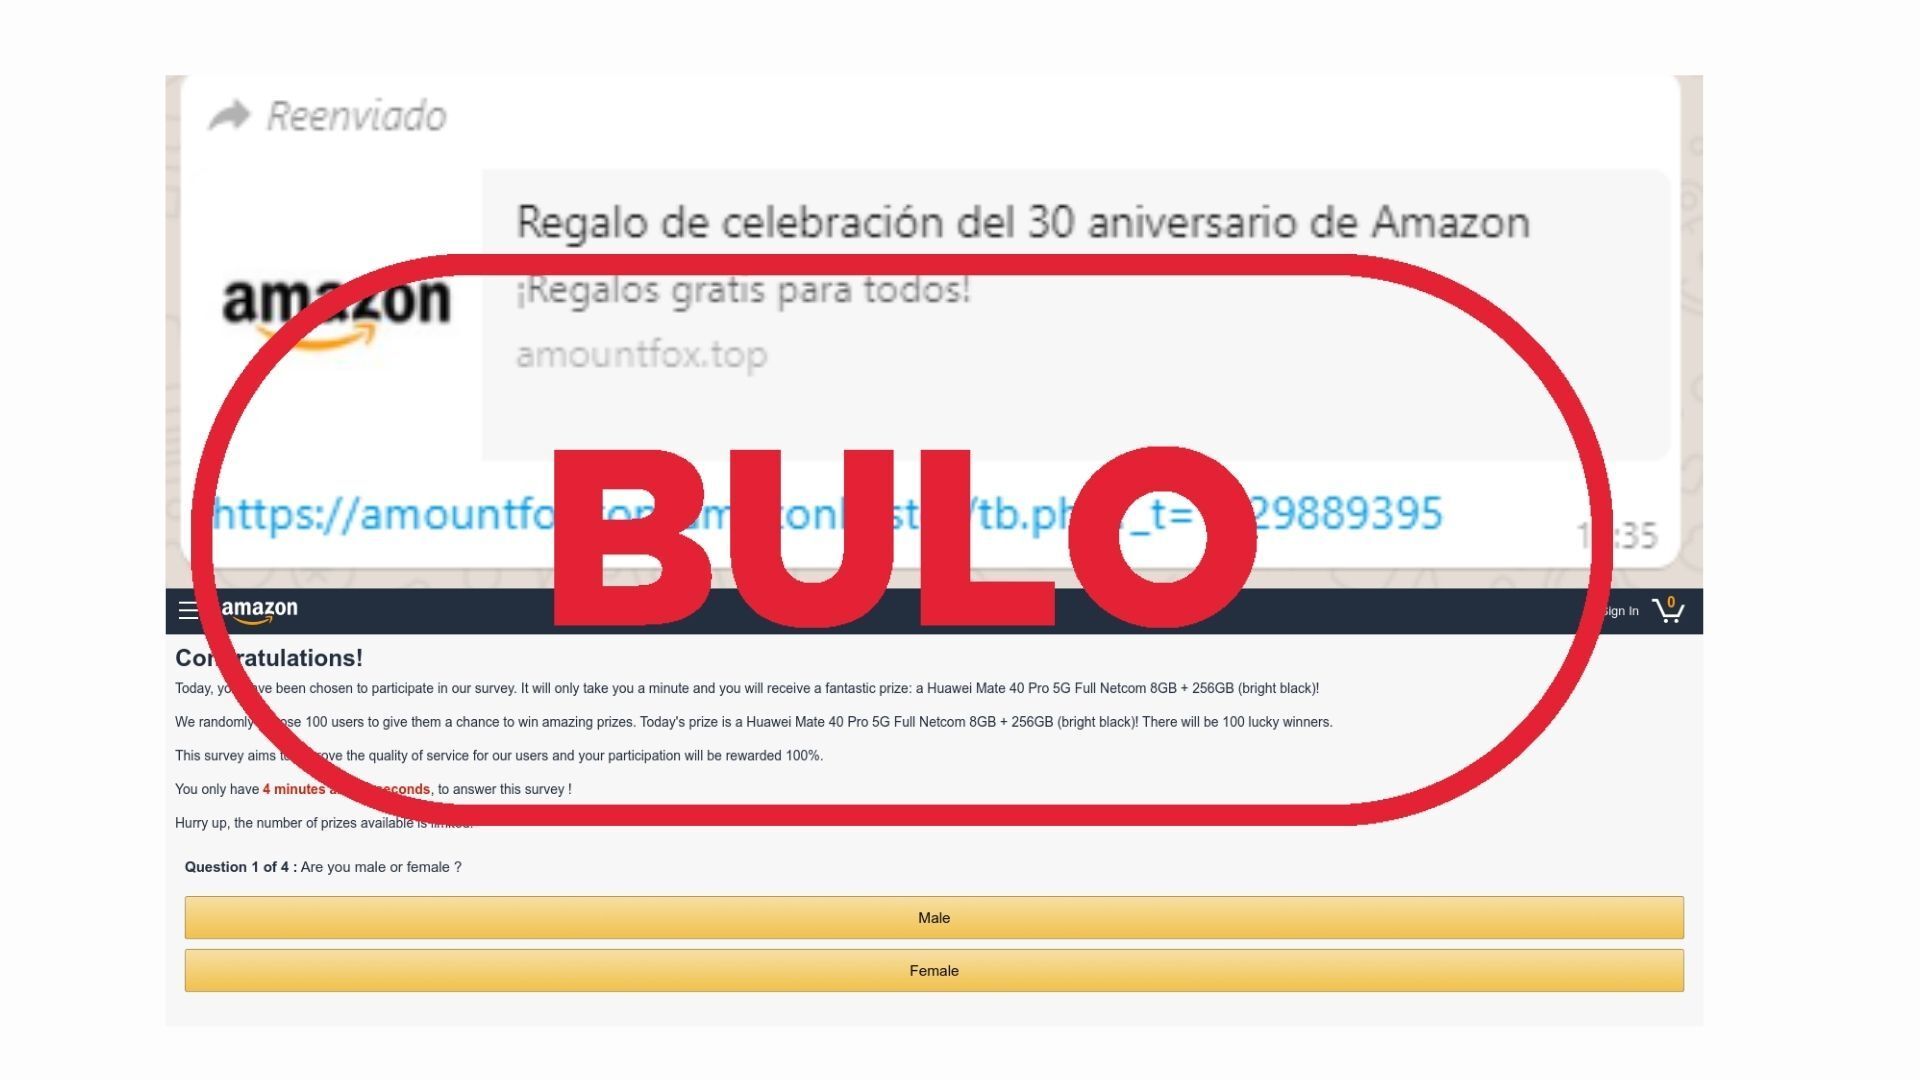 Amazon no te regala nada su 30 aniversario, es un fraude